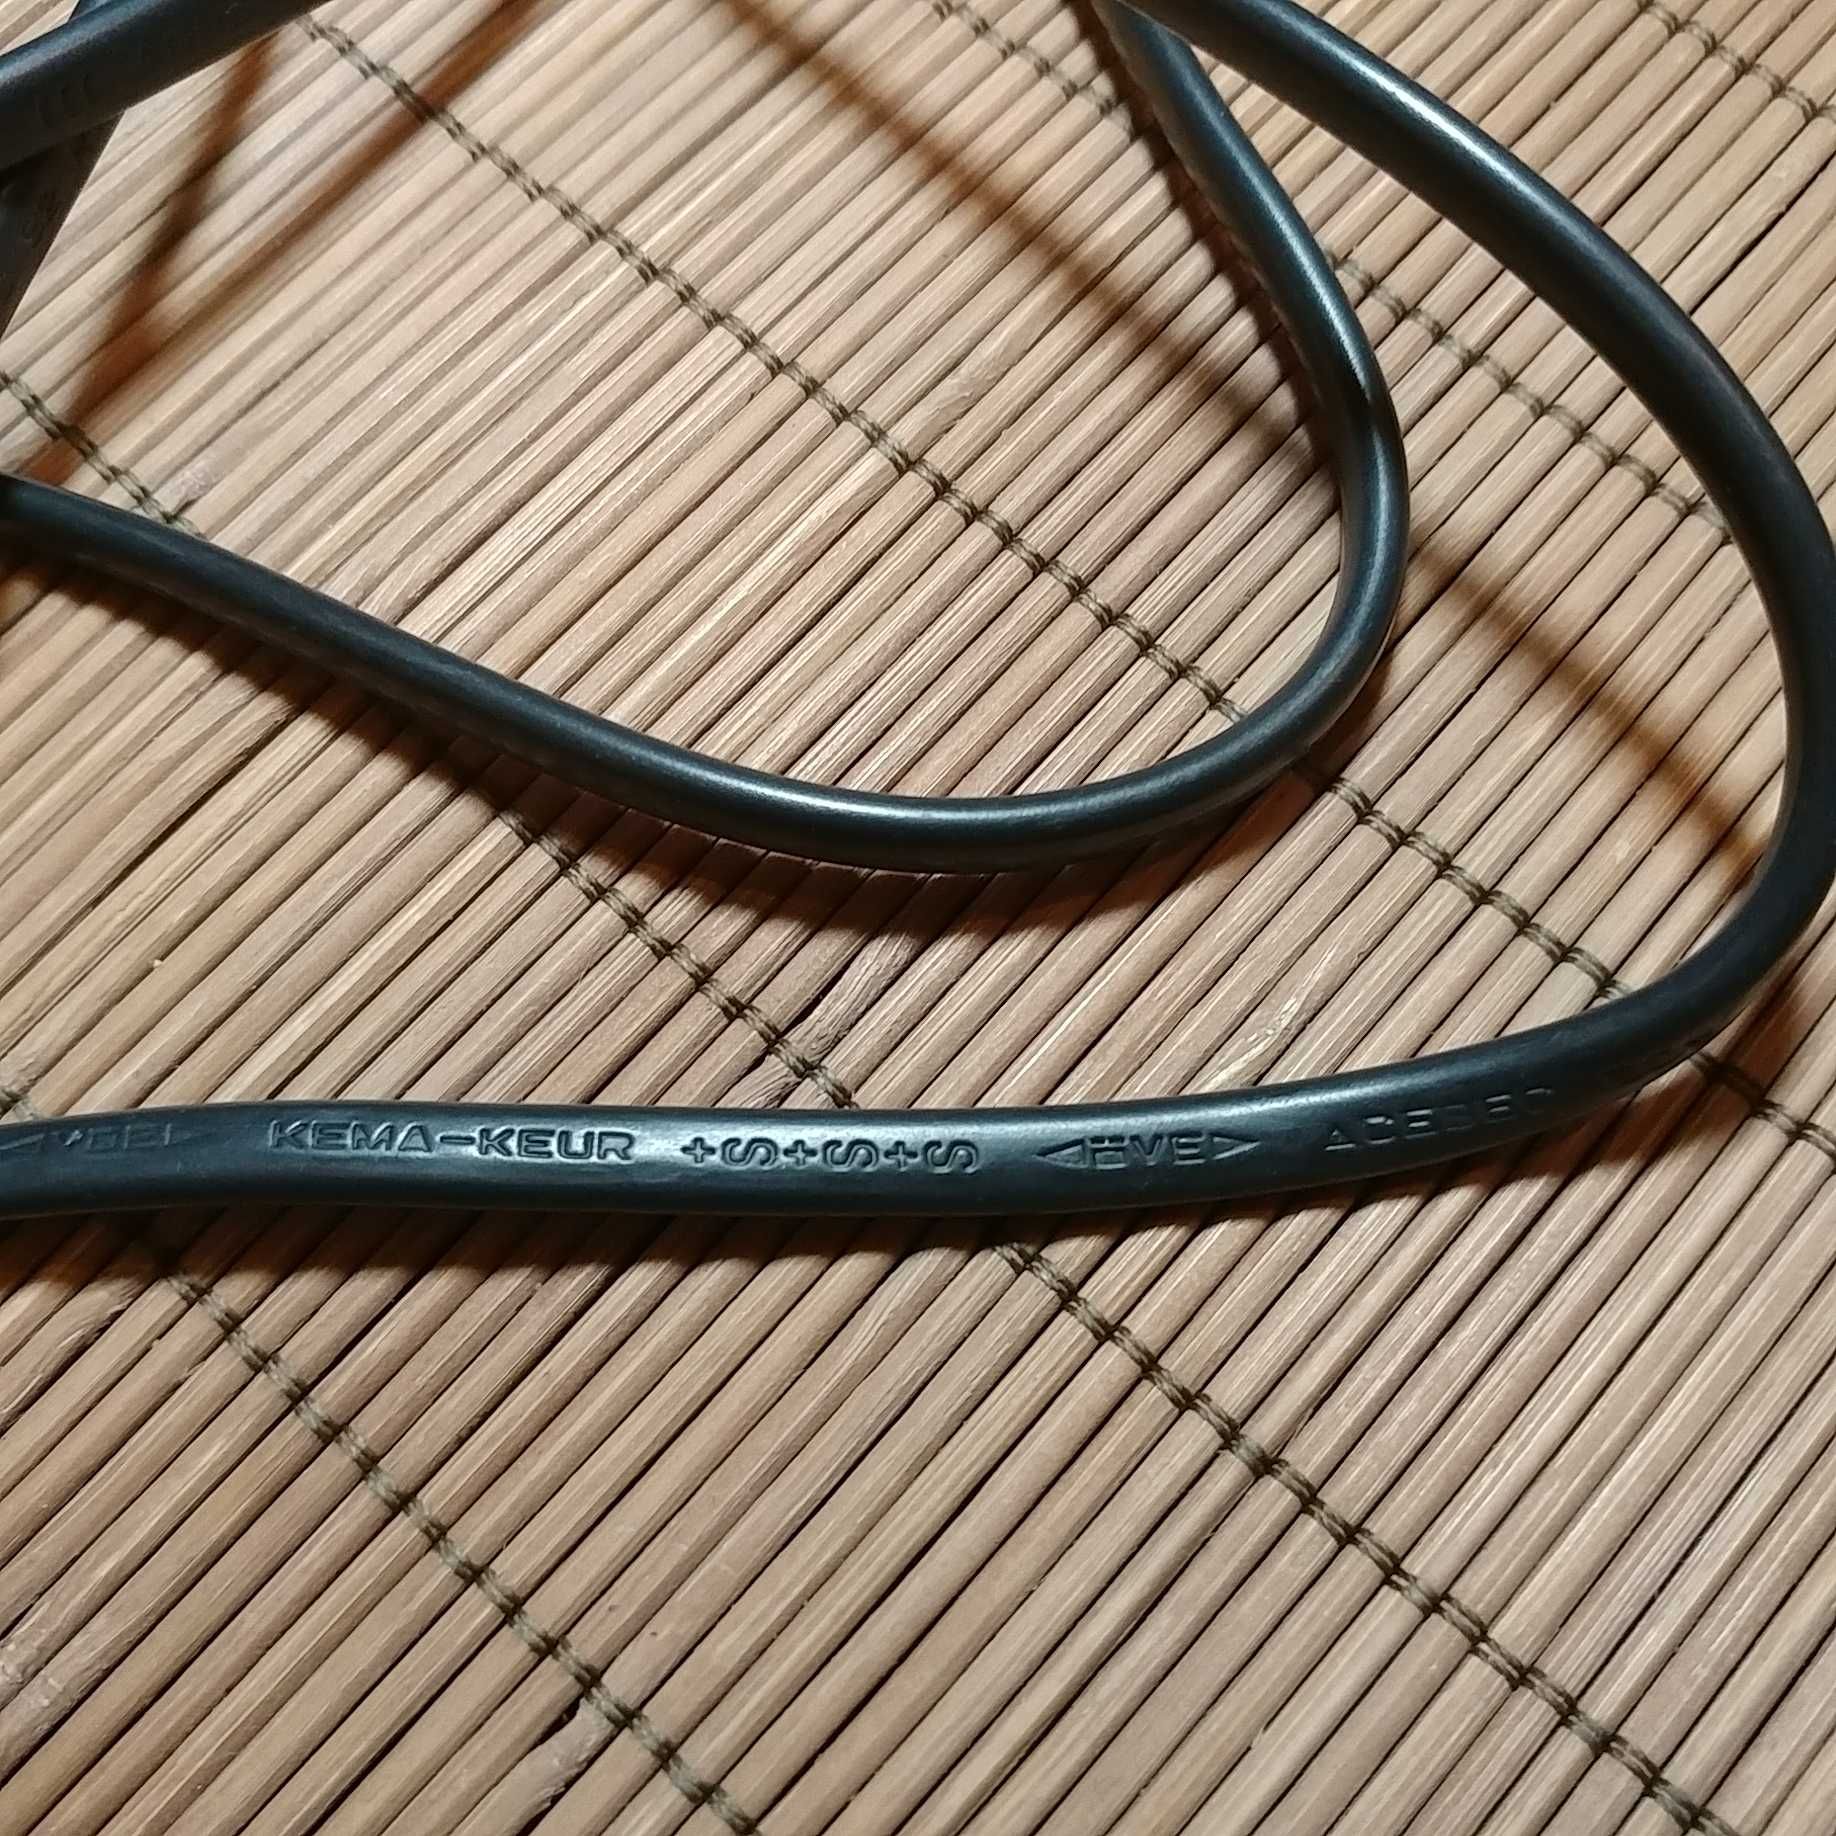 шнур/кабель/провод с вилкой